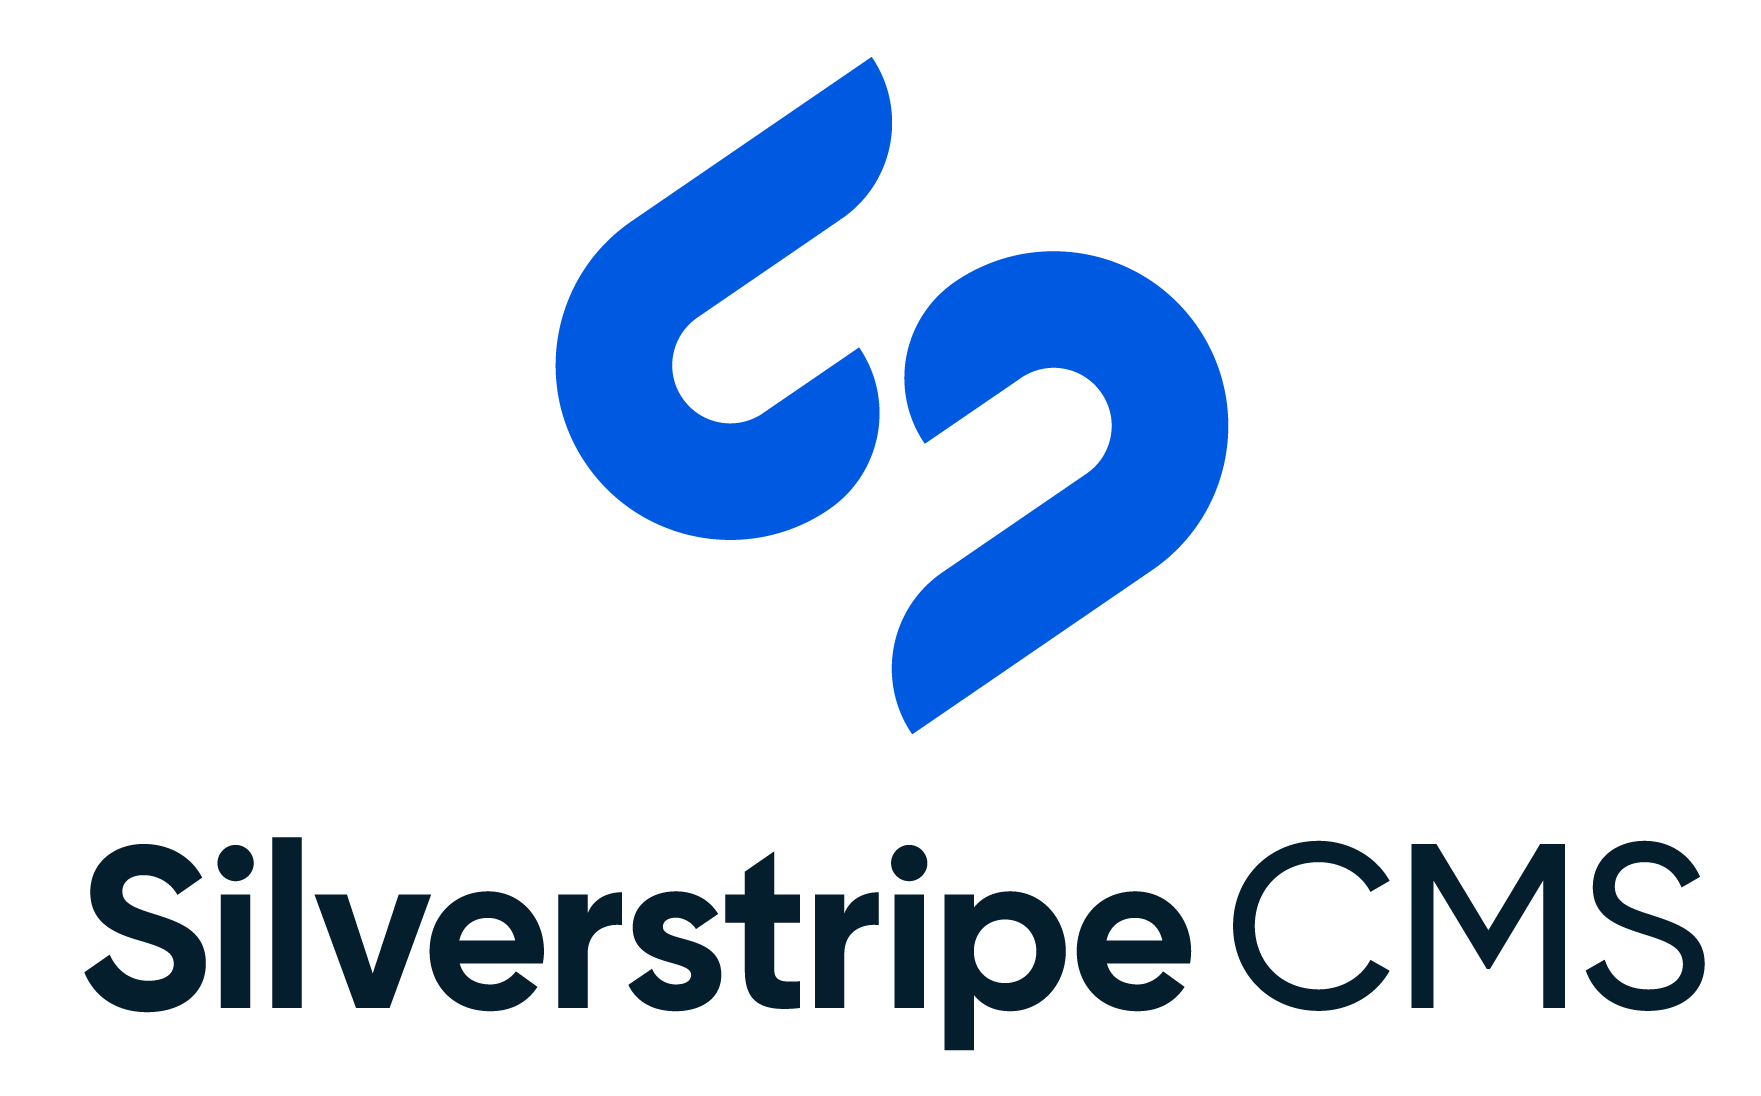 silverstripe cms logo